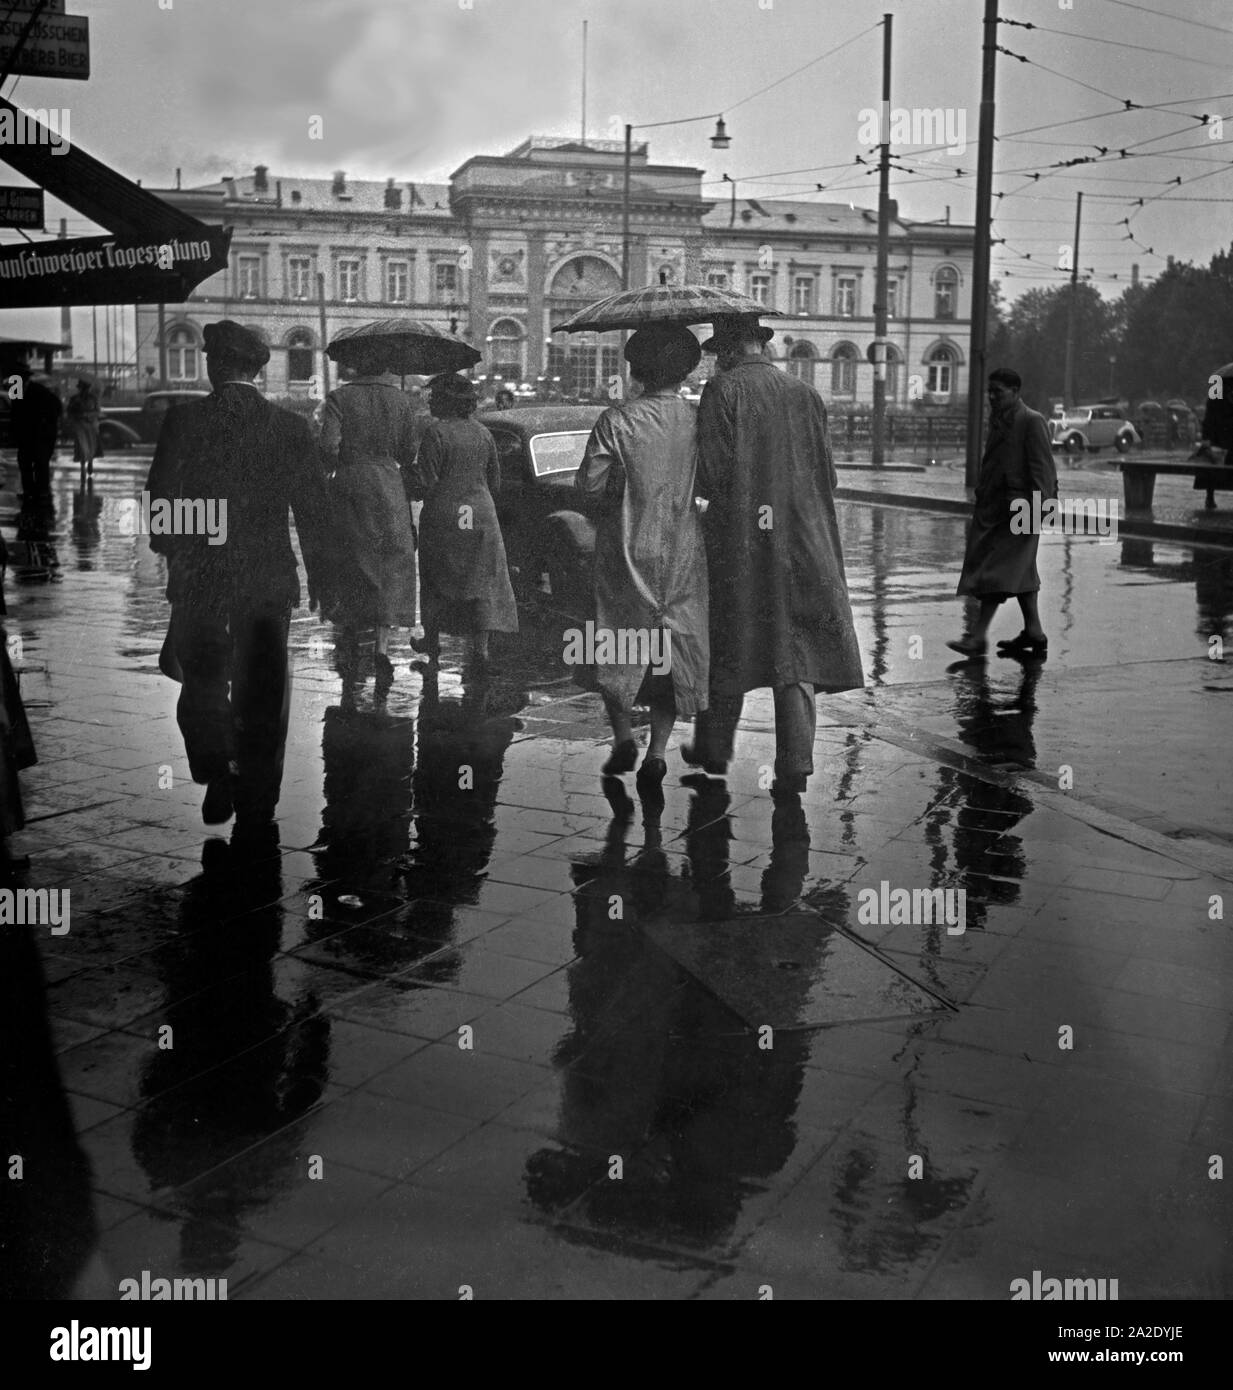 Menschen eilen im Regen auf dem Platz vor dem Hauptbahnhof in Braunschweig, Deutschland 1930er Jahre. Menschen in Eile auf dem Platz vor dem Hauptbahnhof Braunschweig, Deutschland 1930. Stockfoto